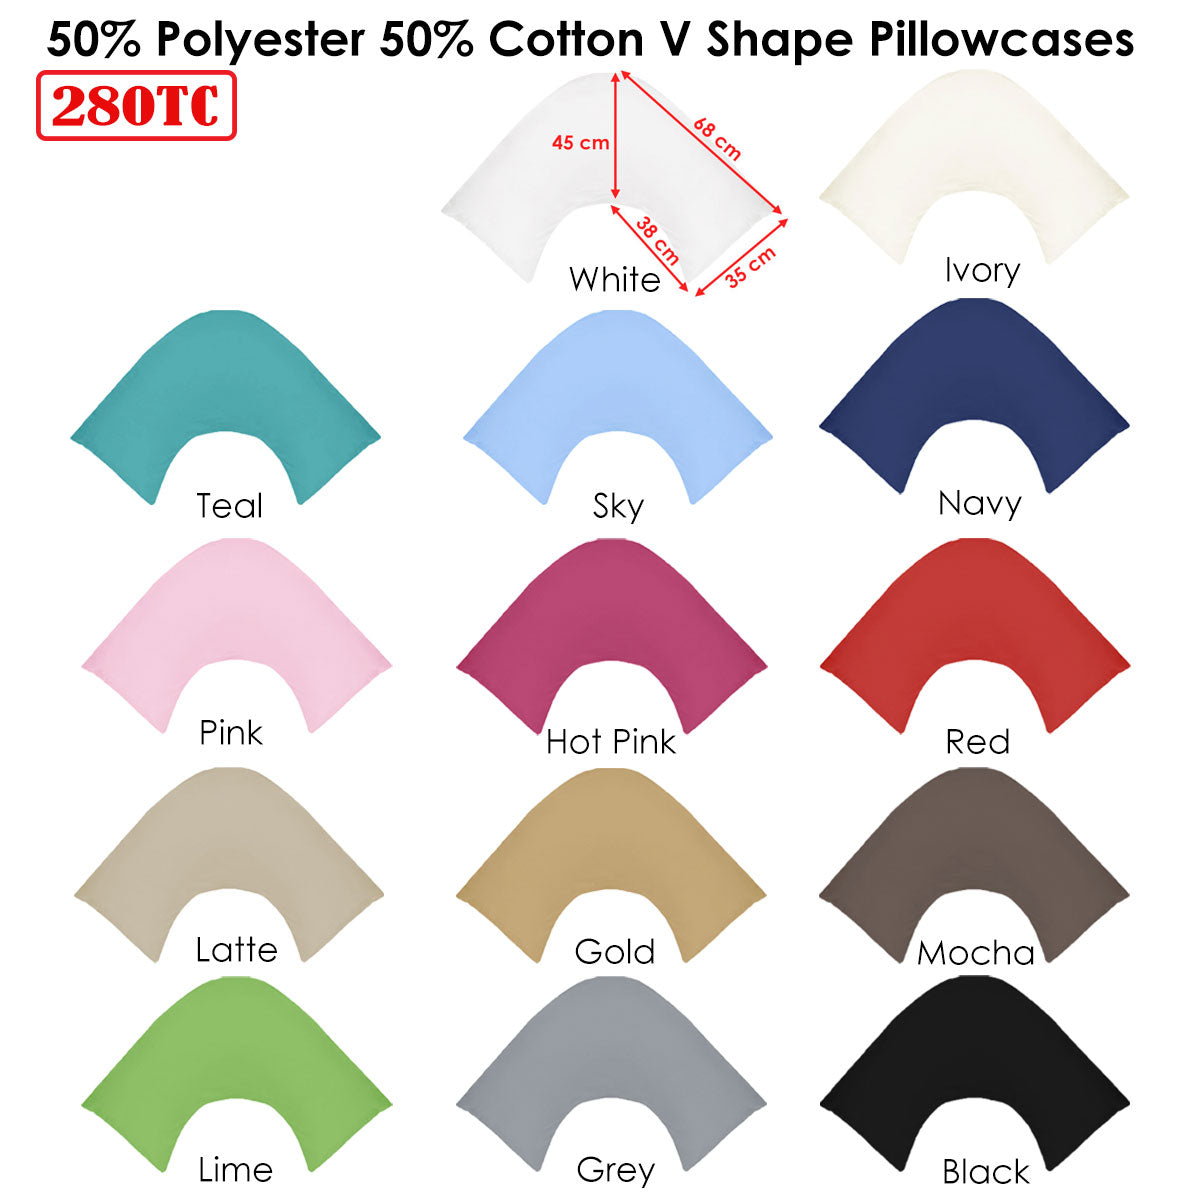 280TC Polyester Cotton V Shape Pillowcase Black